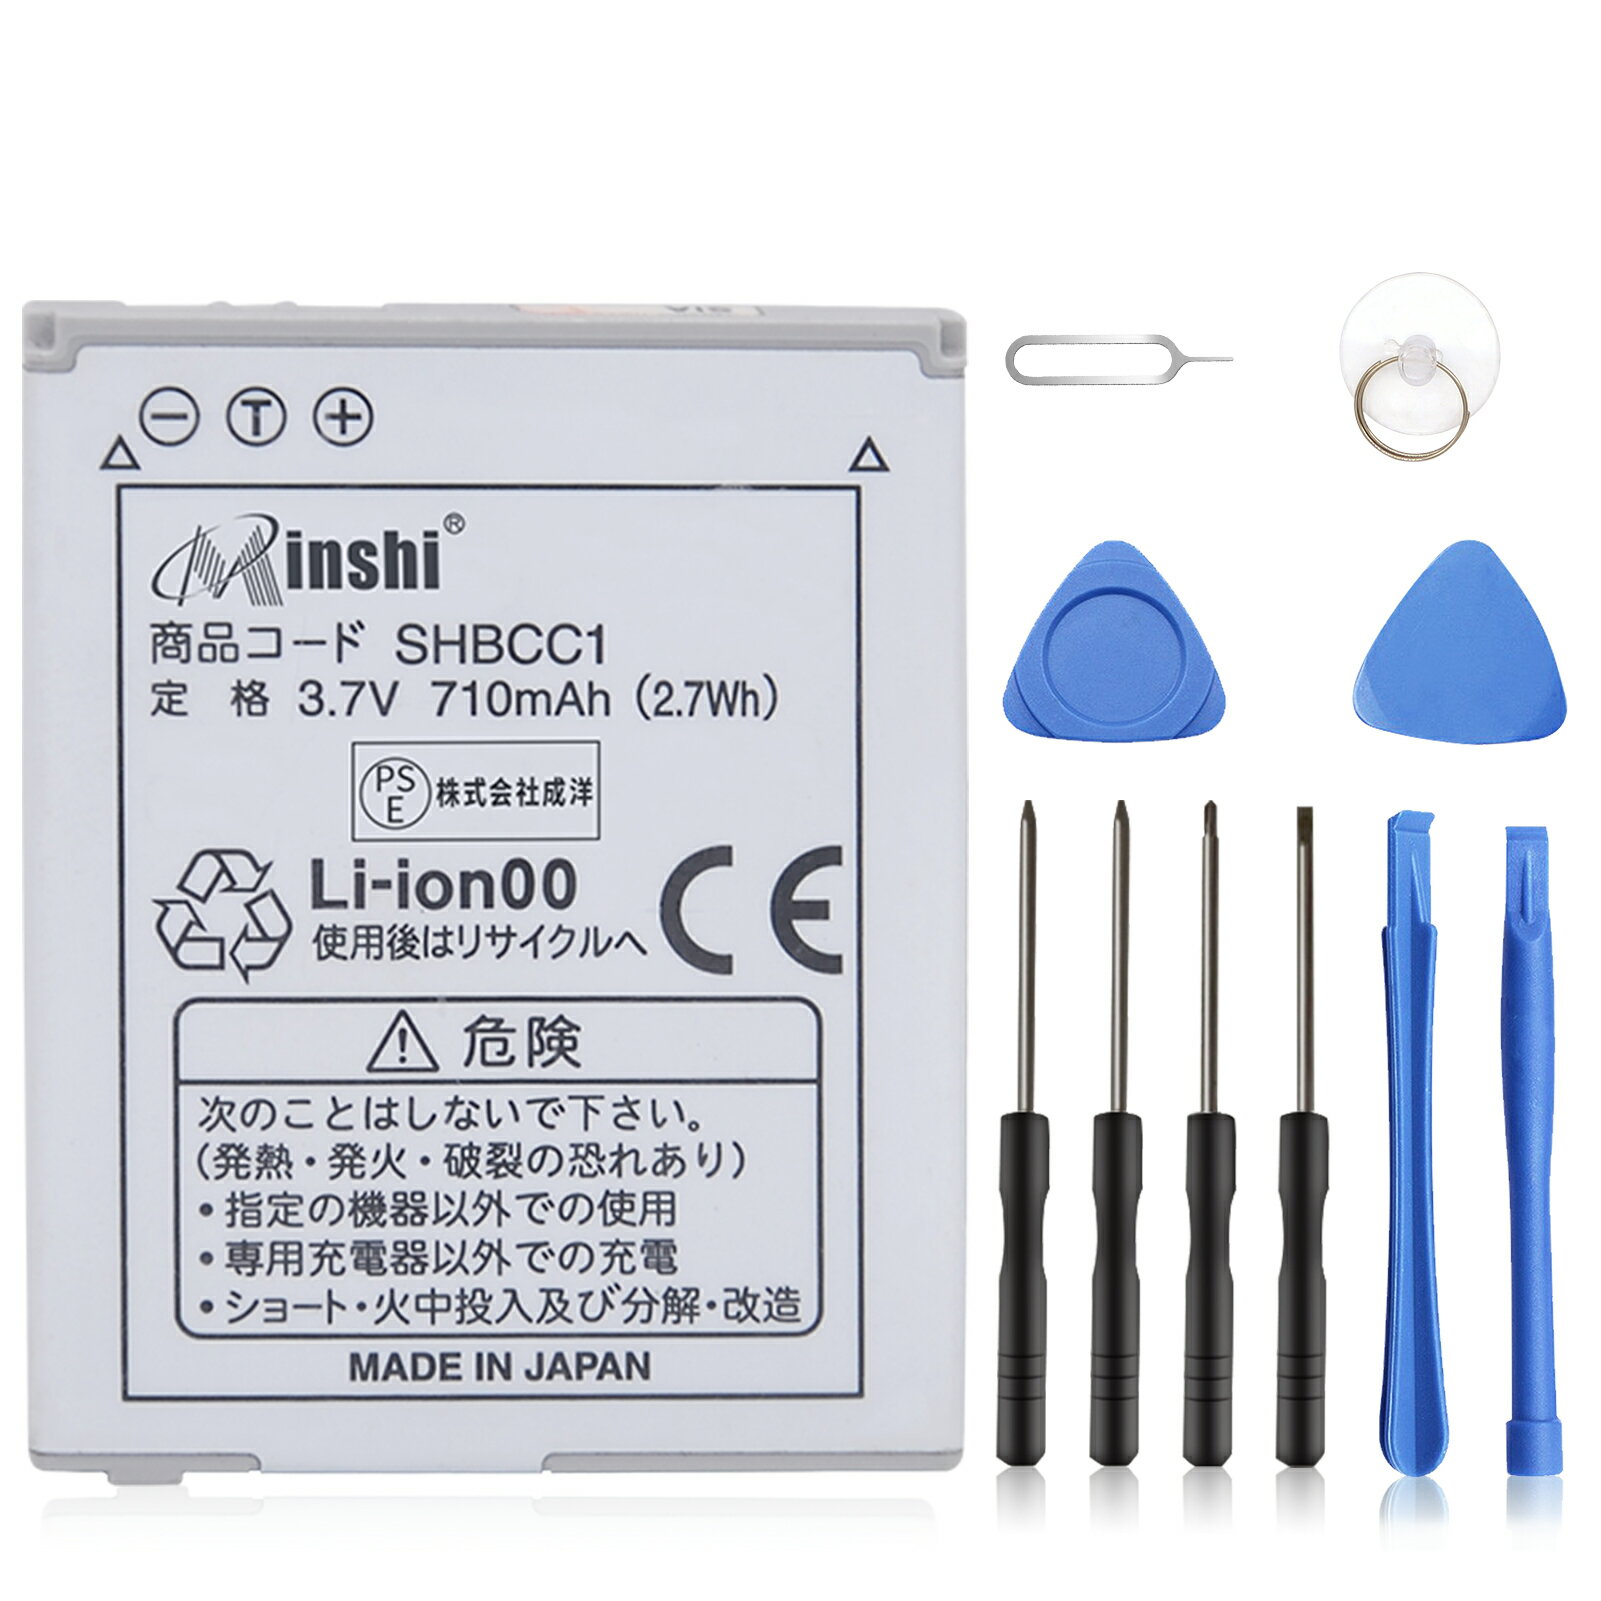 minshi 新品 SHARP WX-T930 互換バッテリー 高品質交換用電池パック PSE認証 工具セット 1年間保証 710mAh